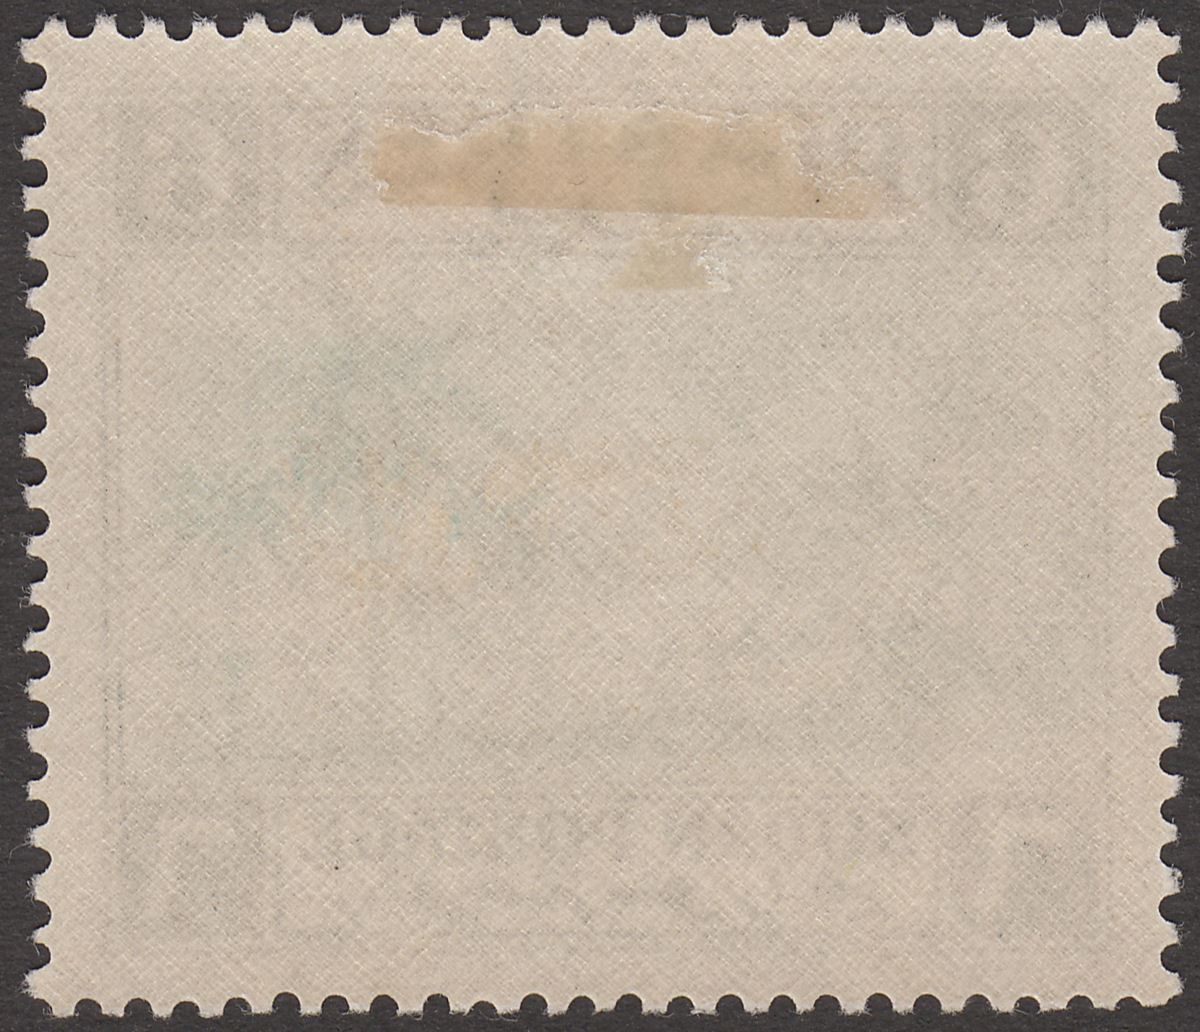 Sudan 1941 Tuti Island 6p Greenish Blue and Black Mint SG92 cat £27